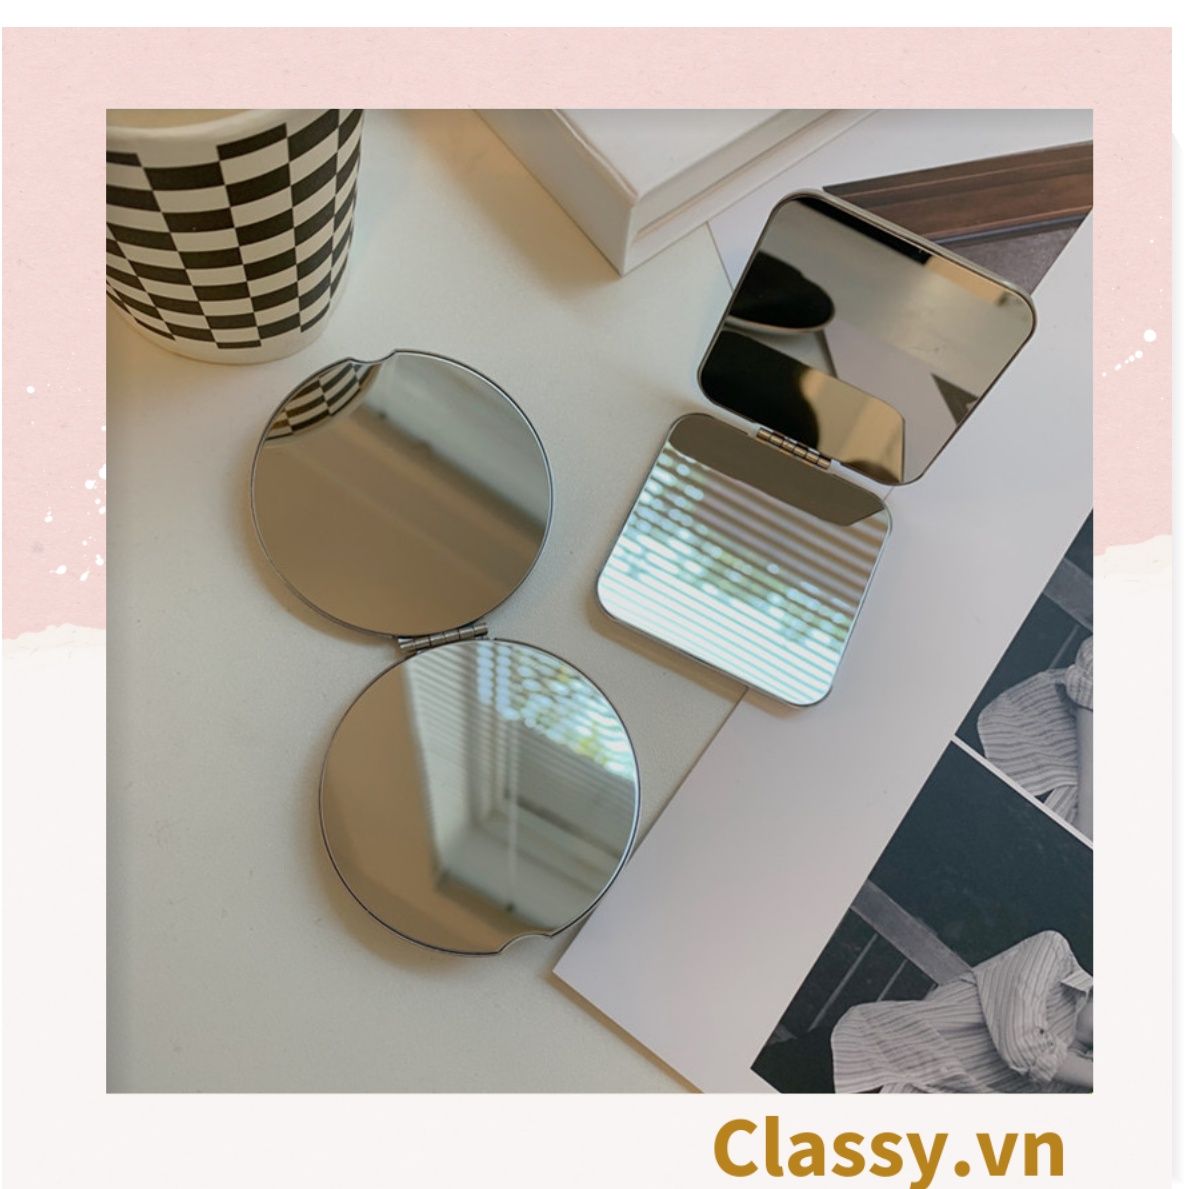  Gương trang điểm cầm tay mini 2 mặt bỏ túi, 6.5 cm , Gương cầm tay mini Hàn Quốc siêu cute, Gương hoạt hình PK1731 